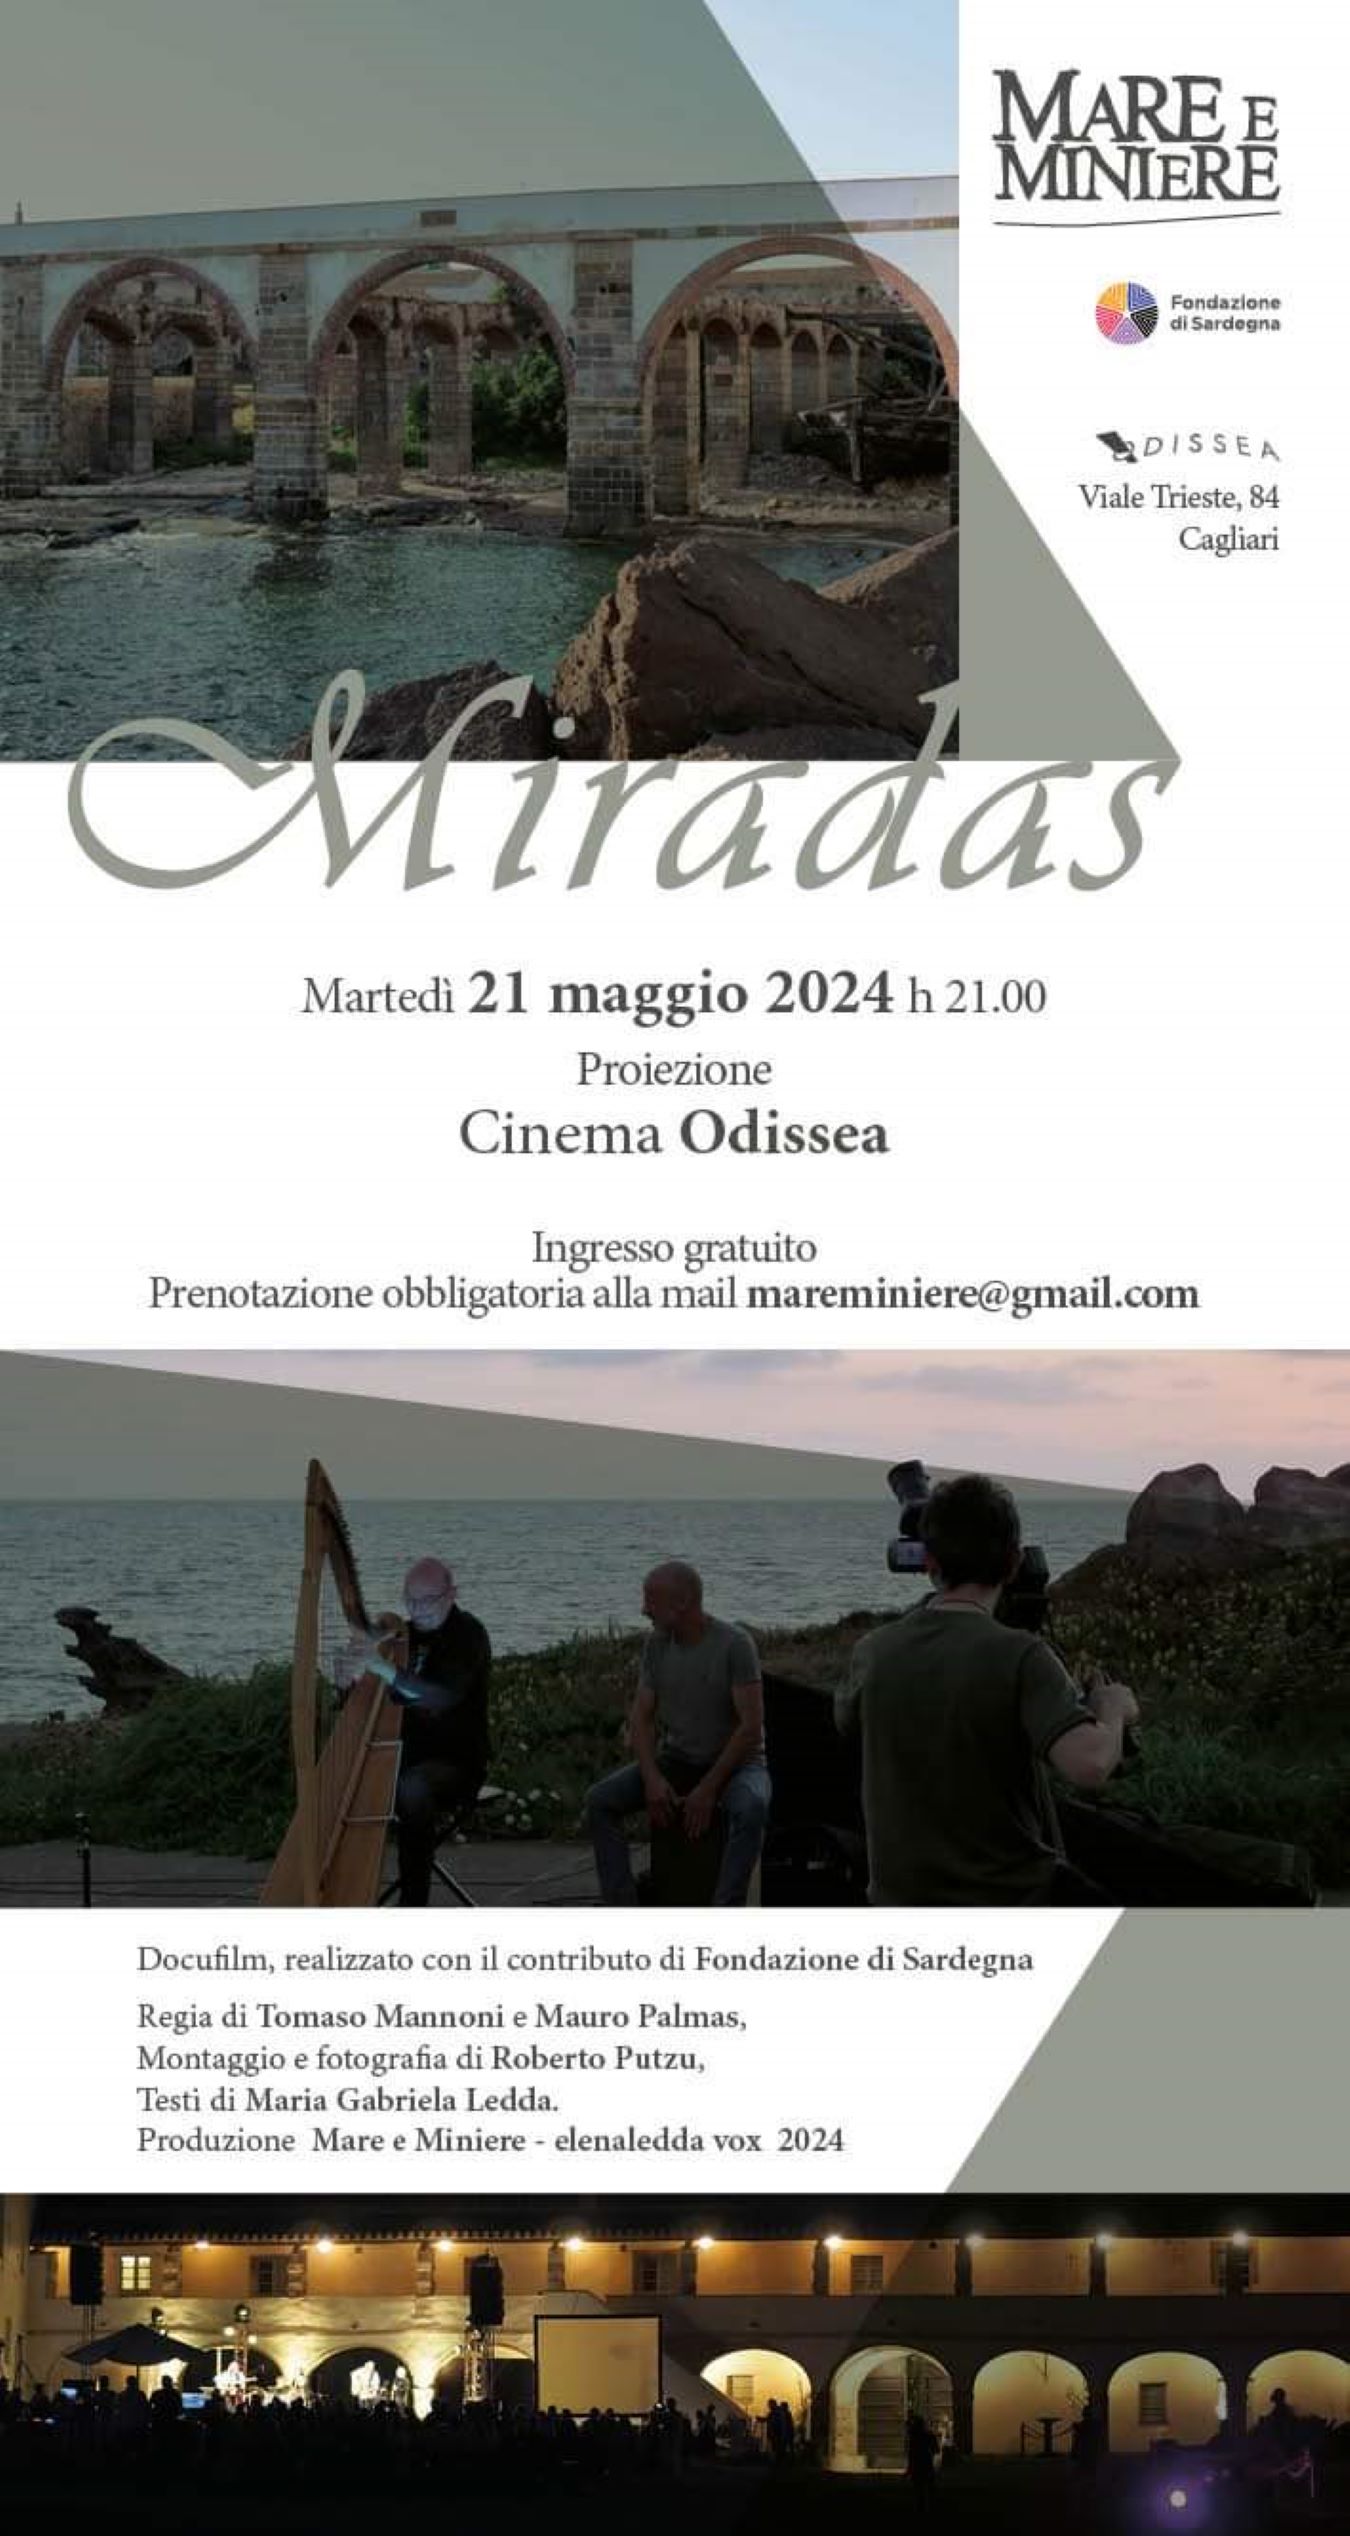 “Mare e Miniere”, il docufilm “Miradas” in tour per la Sardegna: martedì 21 al cinema Odissea di Cagliari, giovedi 23 a Monserrato